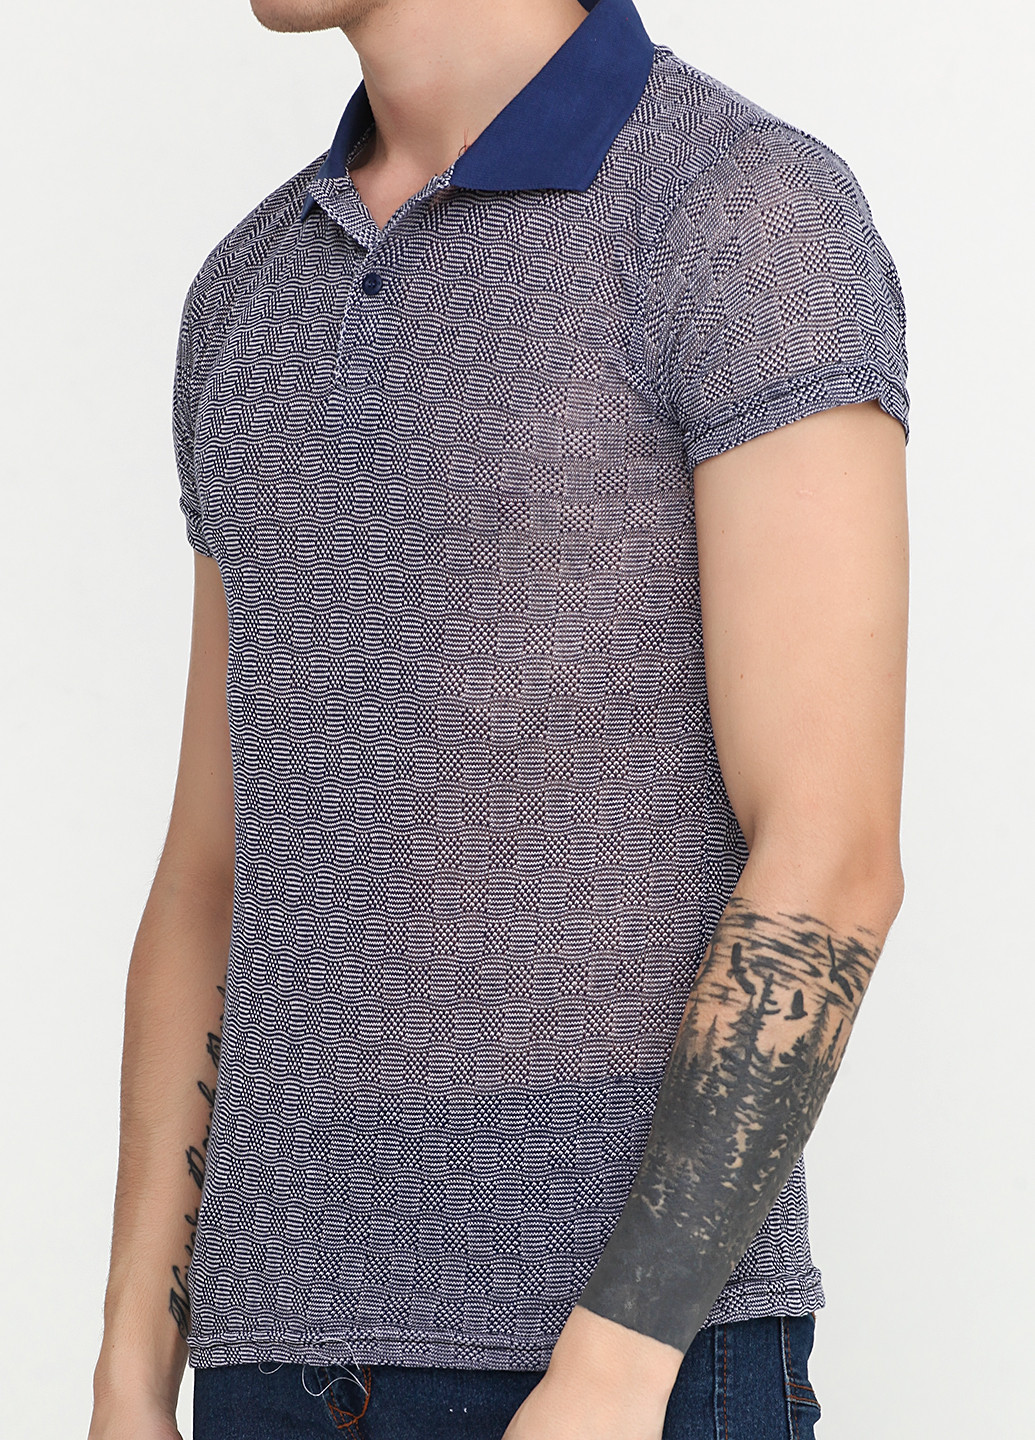 Джинсовая футболка-поло для мужчин Clartex с геометрическим узором